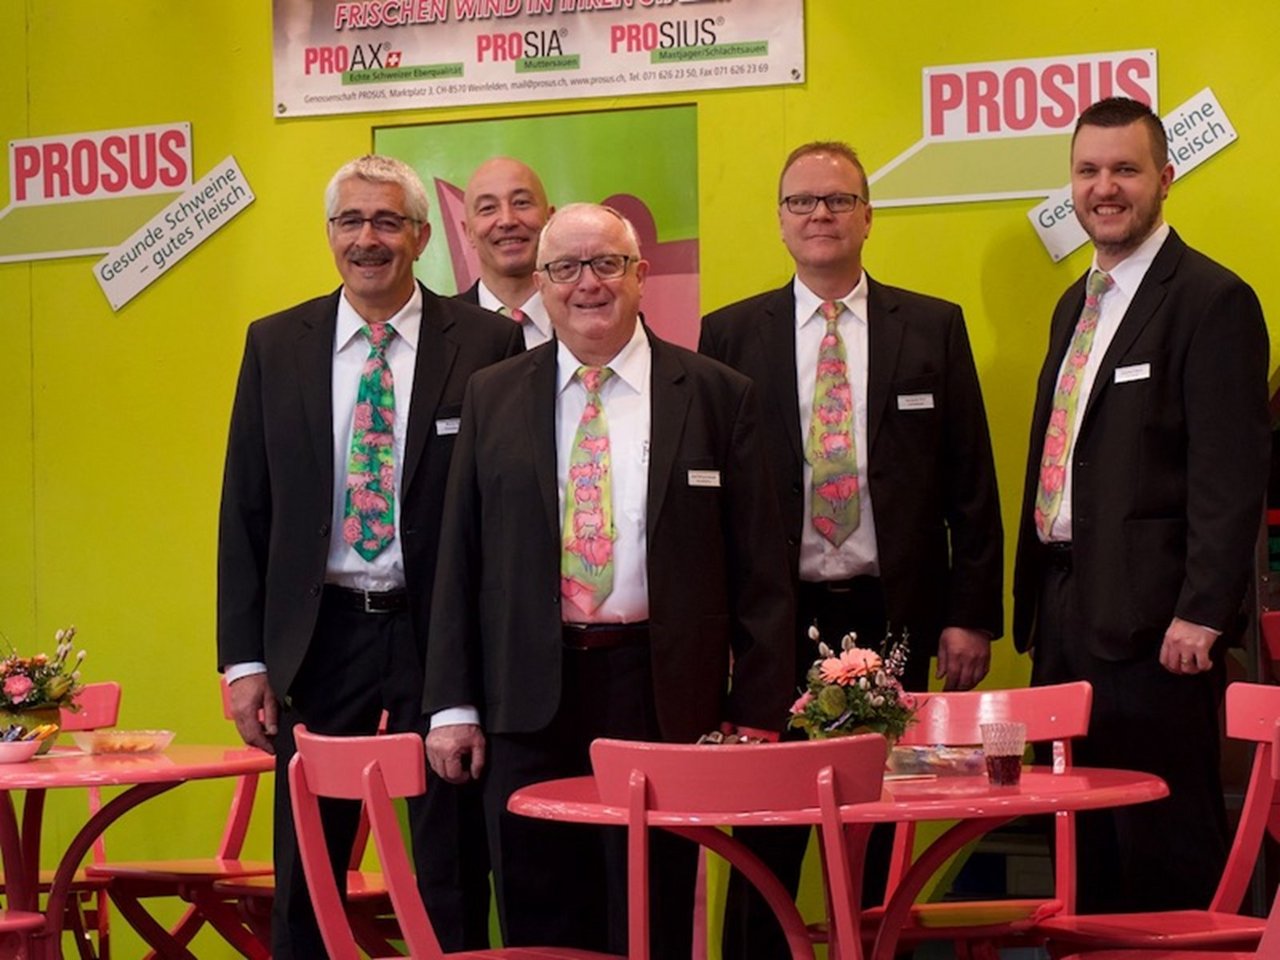 Das Prosus-Team mit den üppigen Krawatten: Bruno Herzog, Johann Egli, Josef Schurtenberger, Hanspeter Erni, Andreas Fritschi (v.l.n.r.)»